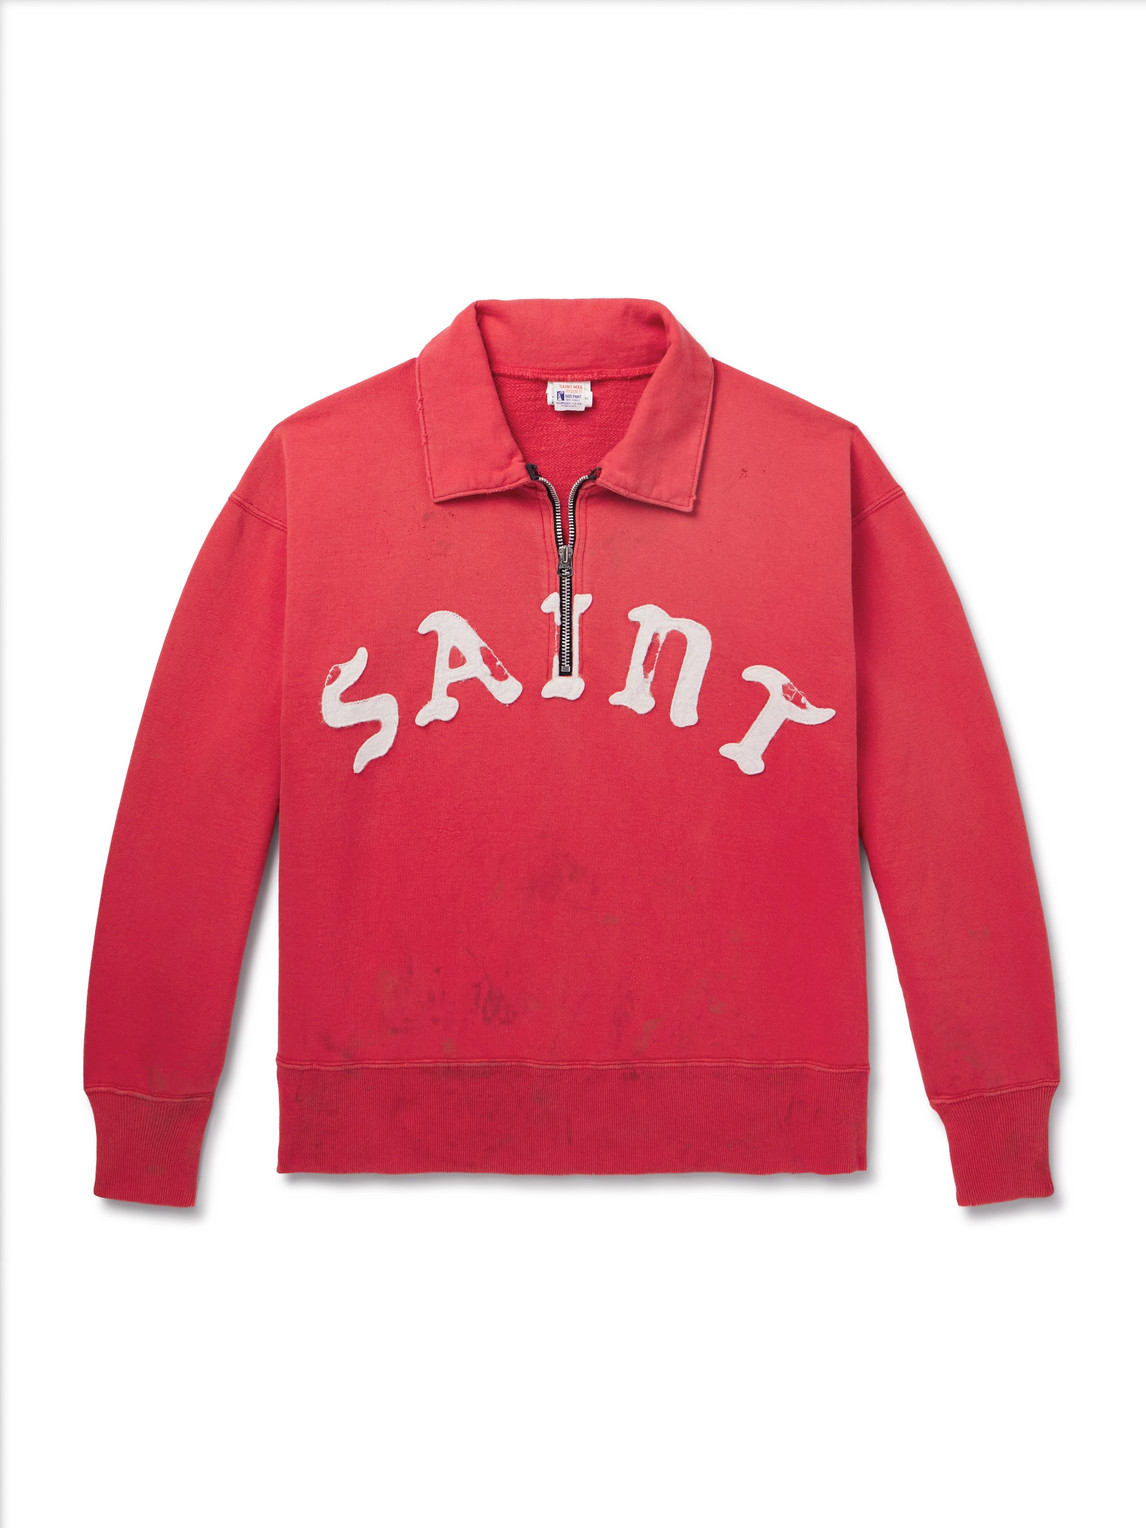 SAINT Mxxxxxx - Distressed Logo-Appliquéd Cotton-Jersey Half-Zip Sweatshirt - Men - Red - L von SAINT Mxxxxxx